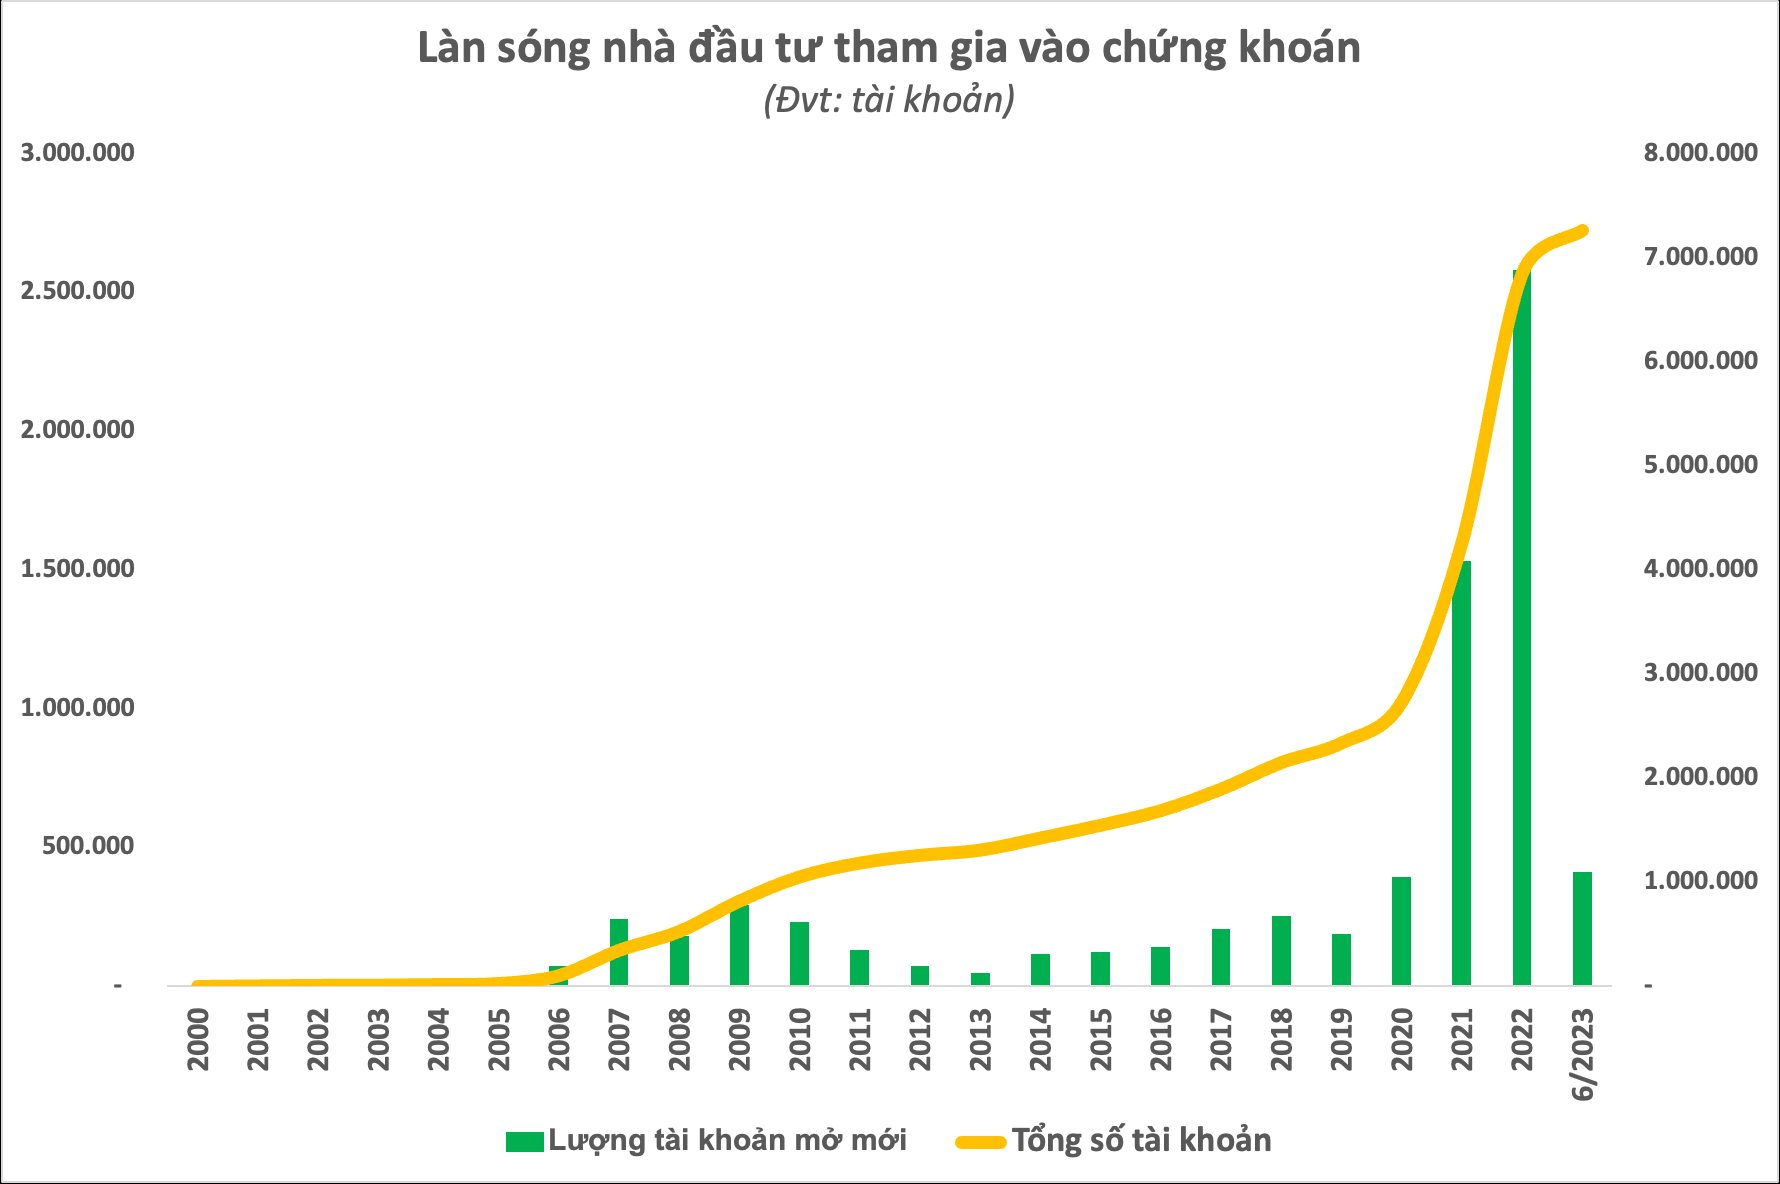 Sau 23 năm hoạt động của thị trường chứng khoán Việt Nam: Phổ cập hơn 7 triệu tài khoản, khẳng định vị thế của kênh dẫn vốn quan trọng trong nền kinh tế - Ảnh 6.